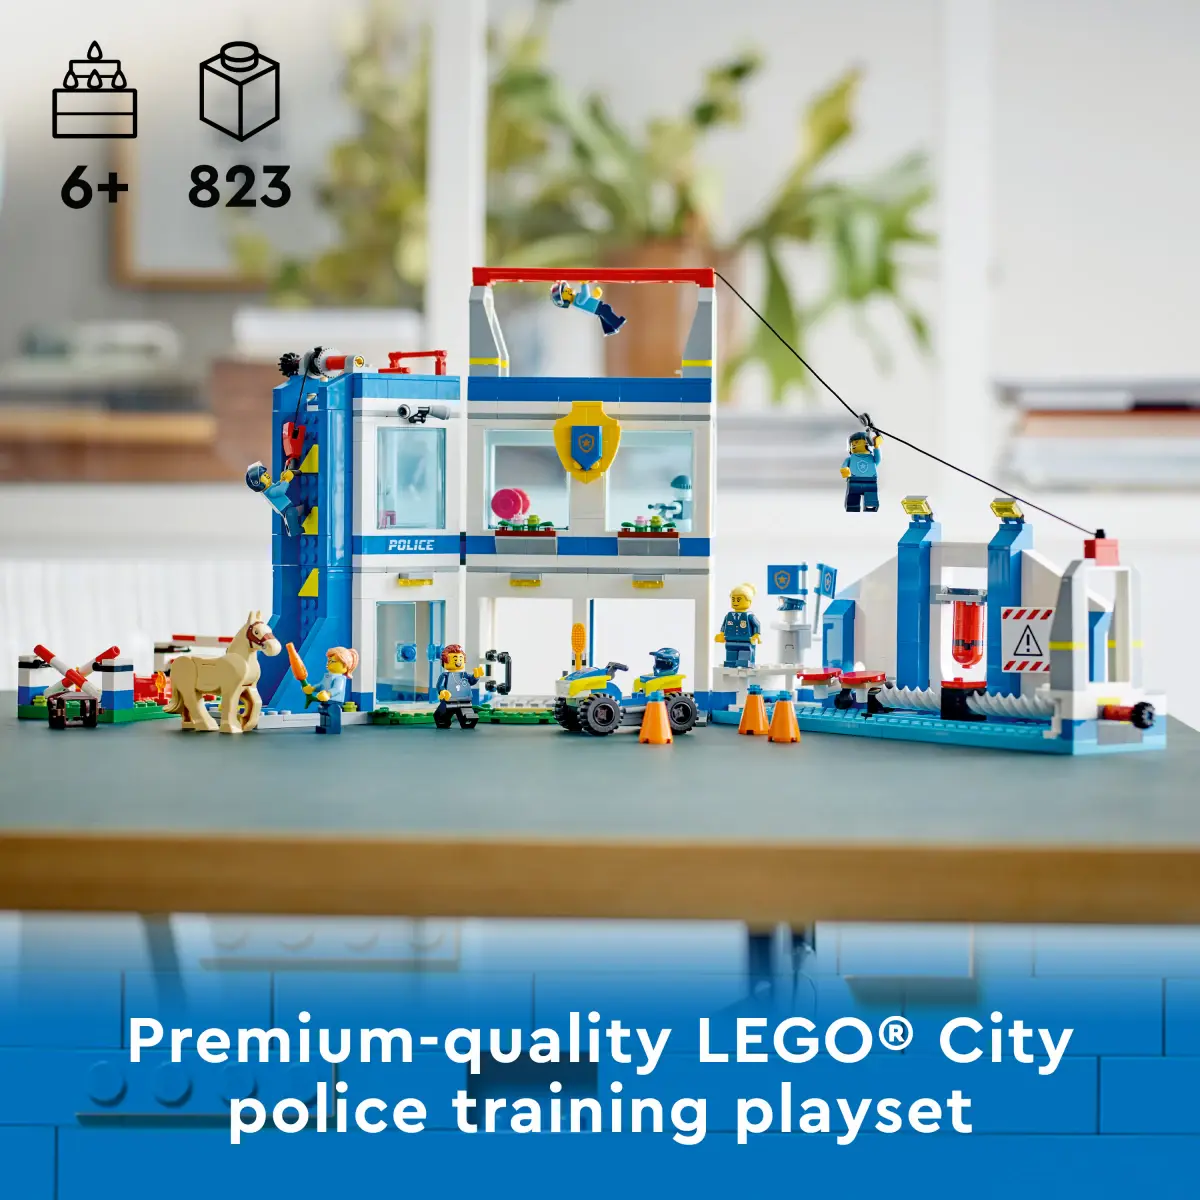 LEGO City Police Training Academy Building Toy Set, 823 Pieces, Multicolour, 6Y+